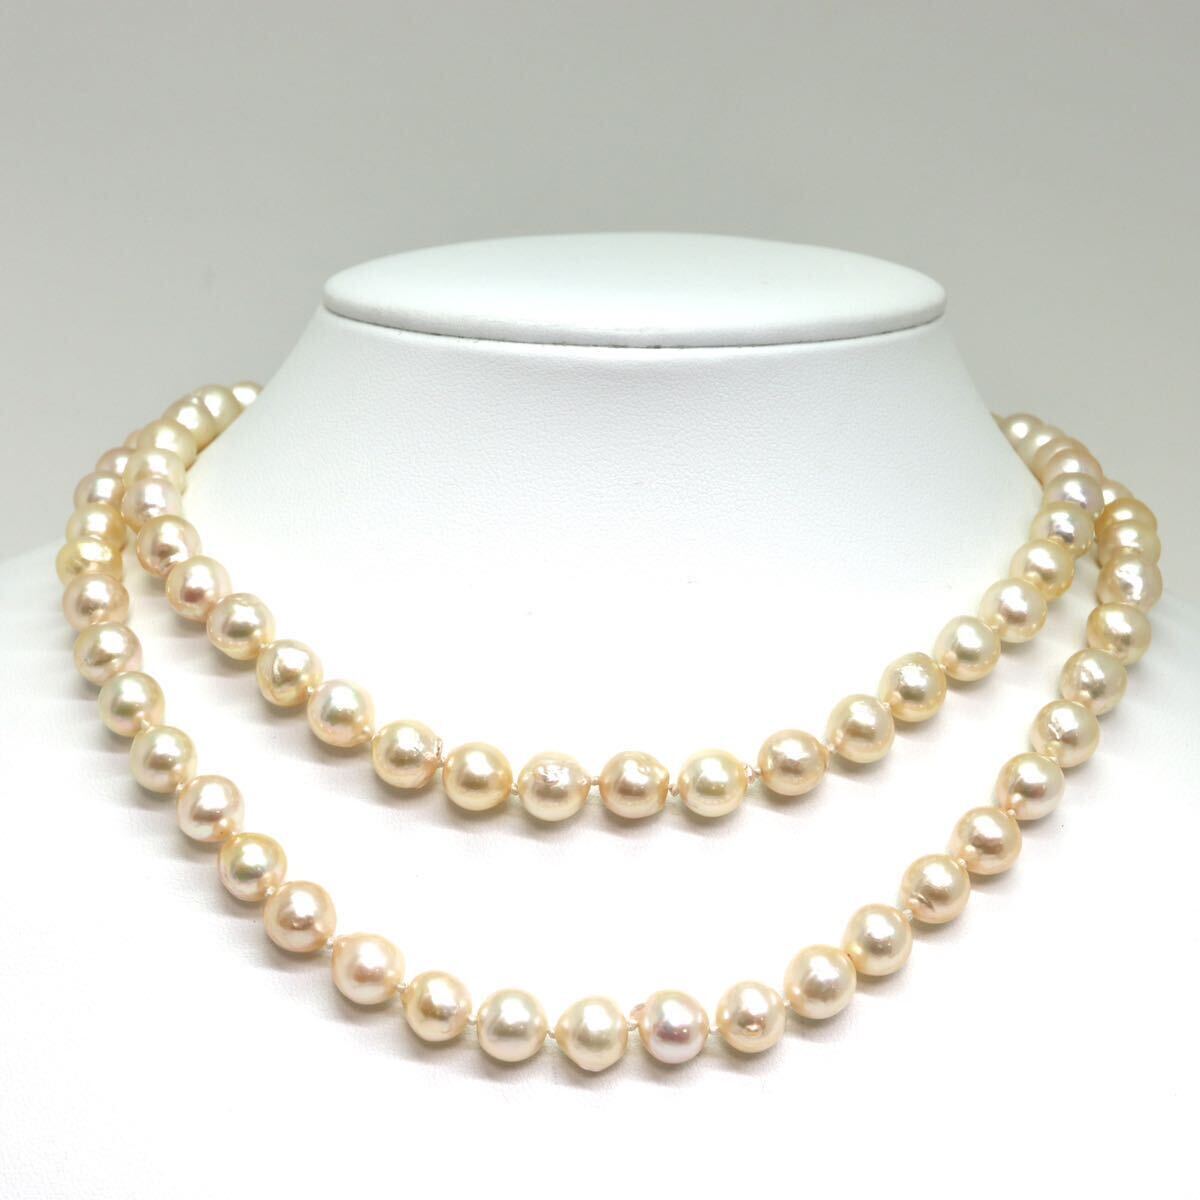 《アコヤ本真珠ロングネックレス》M 71.9g 約8.0-8.5mm珠 約84cm pearl necklace ジュエリー jewelry DC0/DE0の画像3